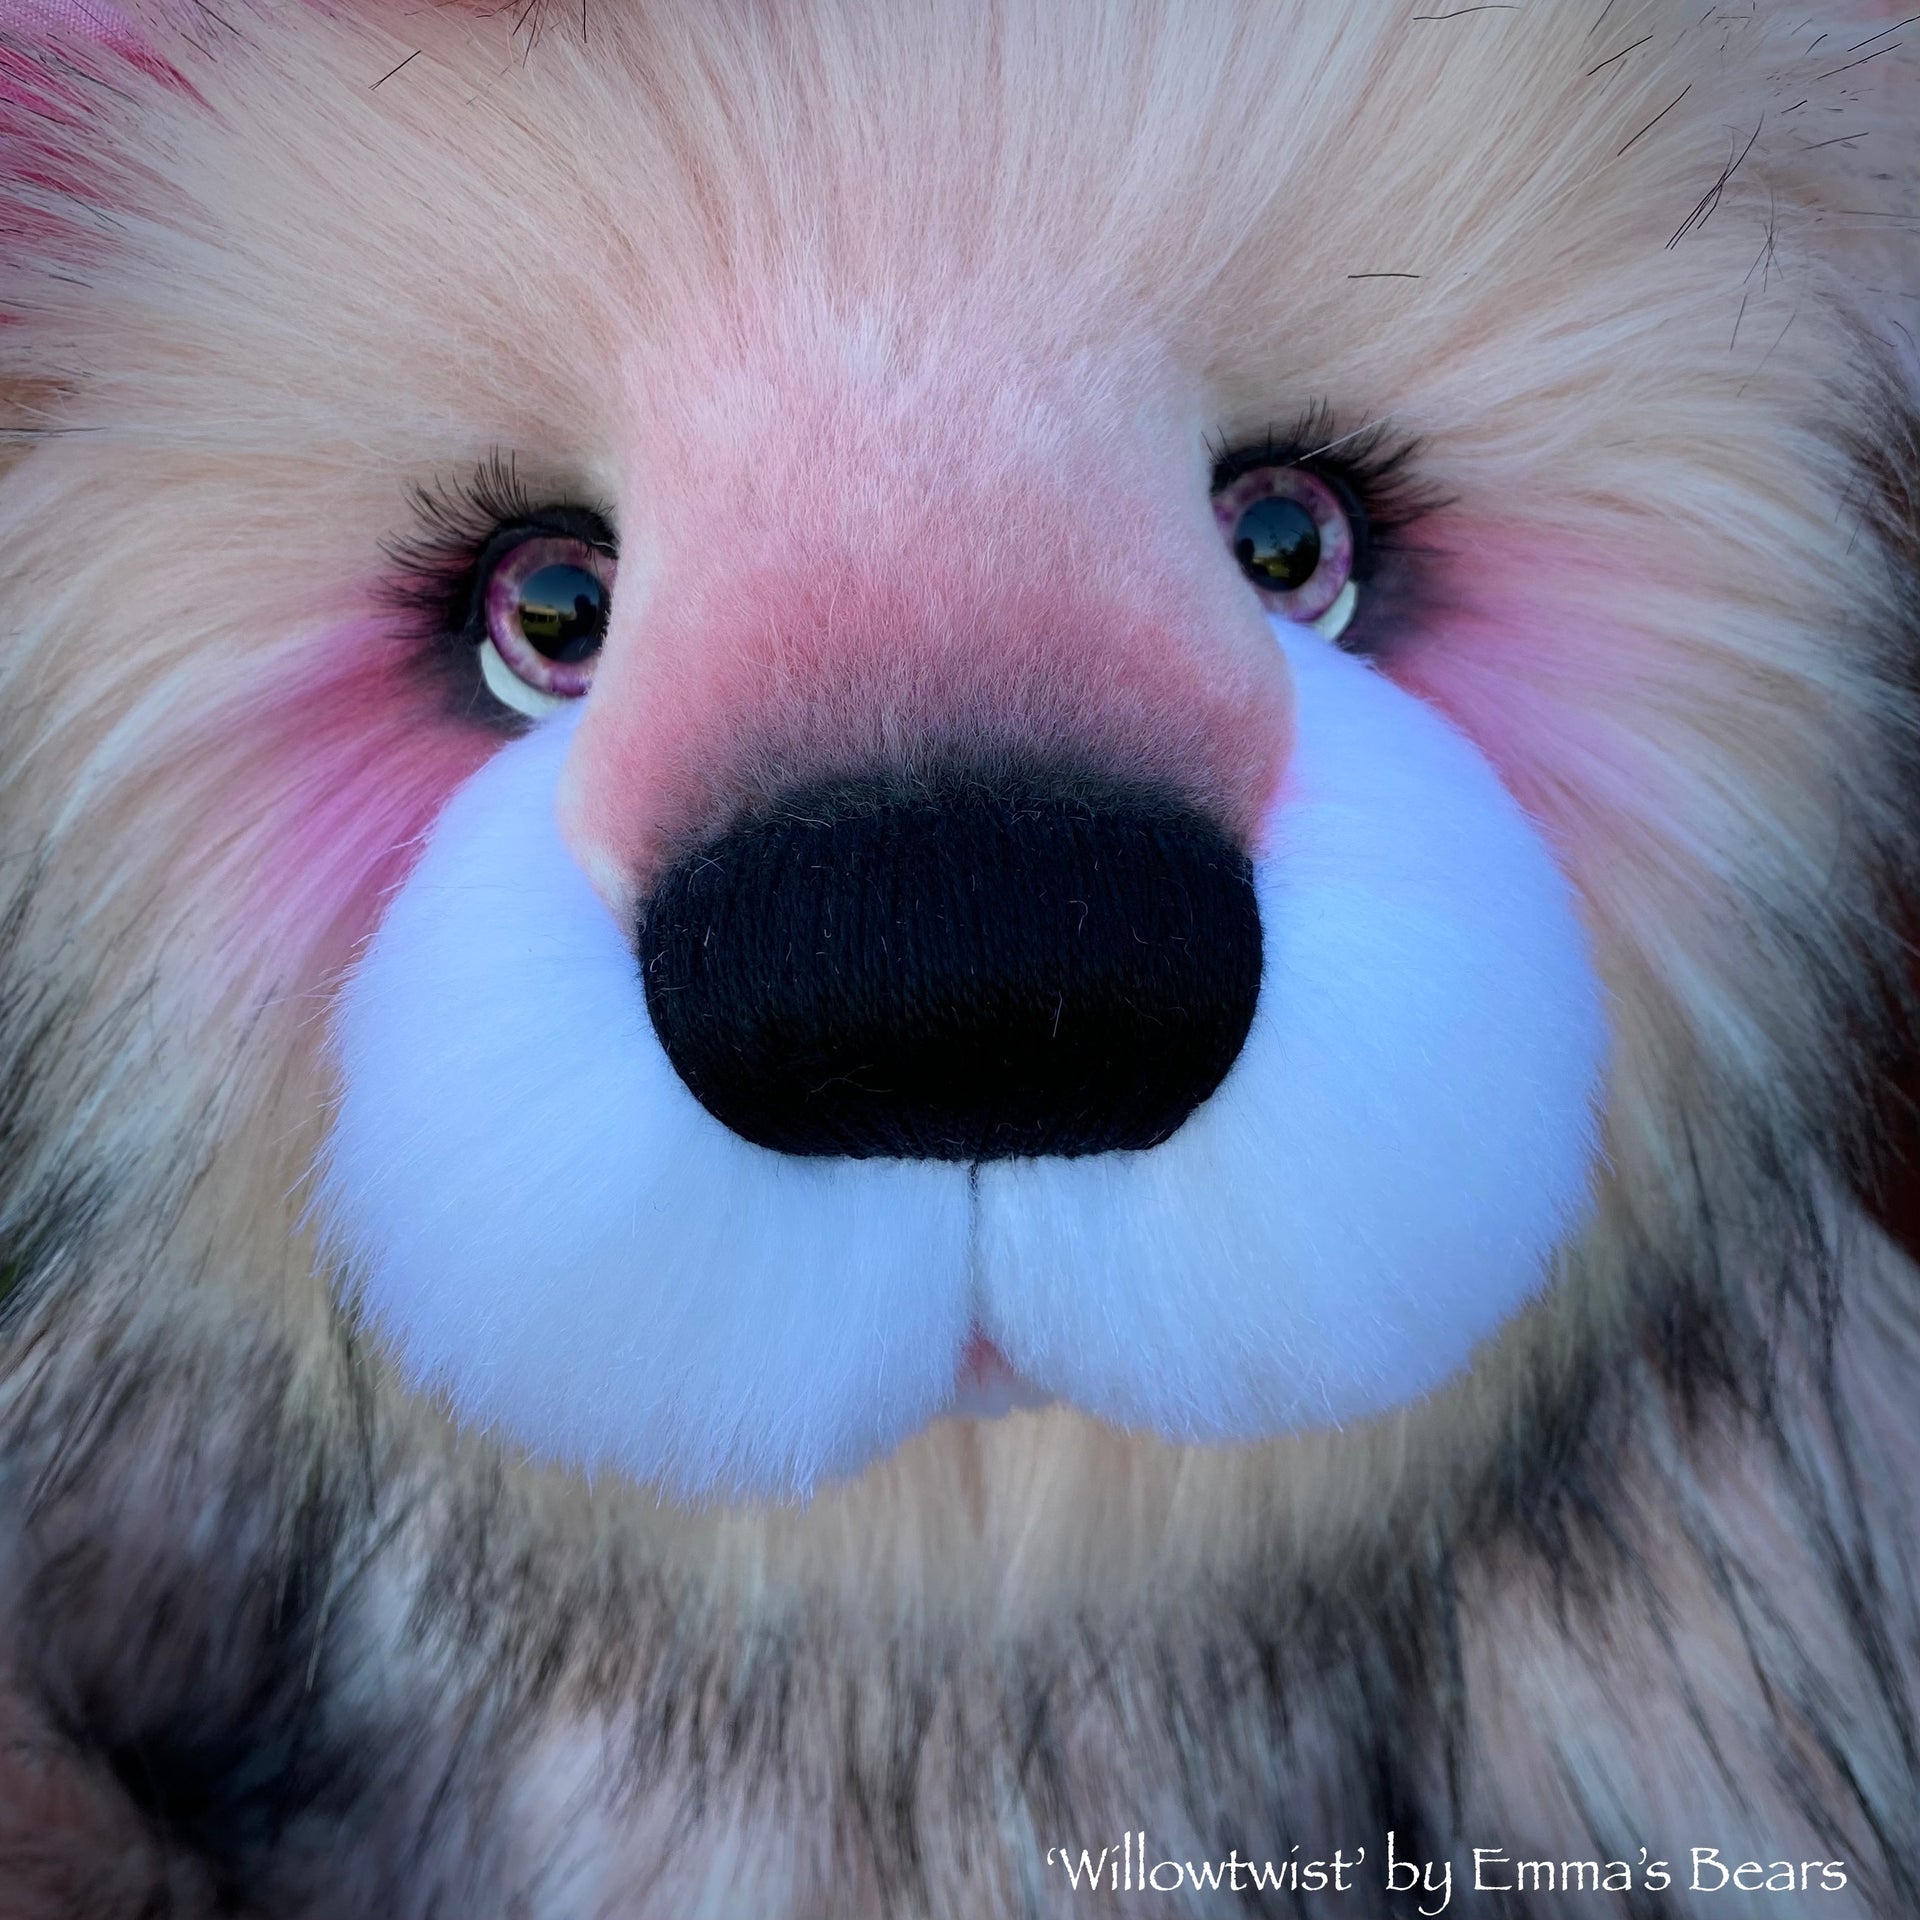 Willowtwist - 23" Faux Fur Artist Bear by Emma's Bears - OOAK